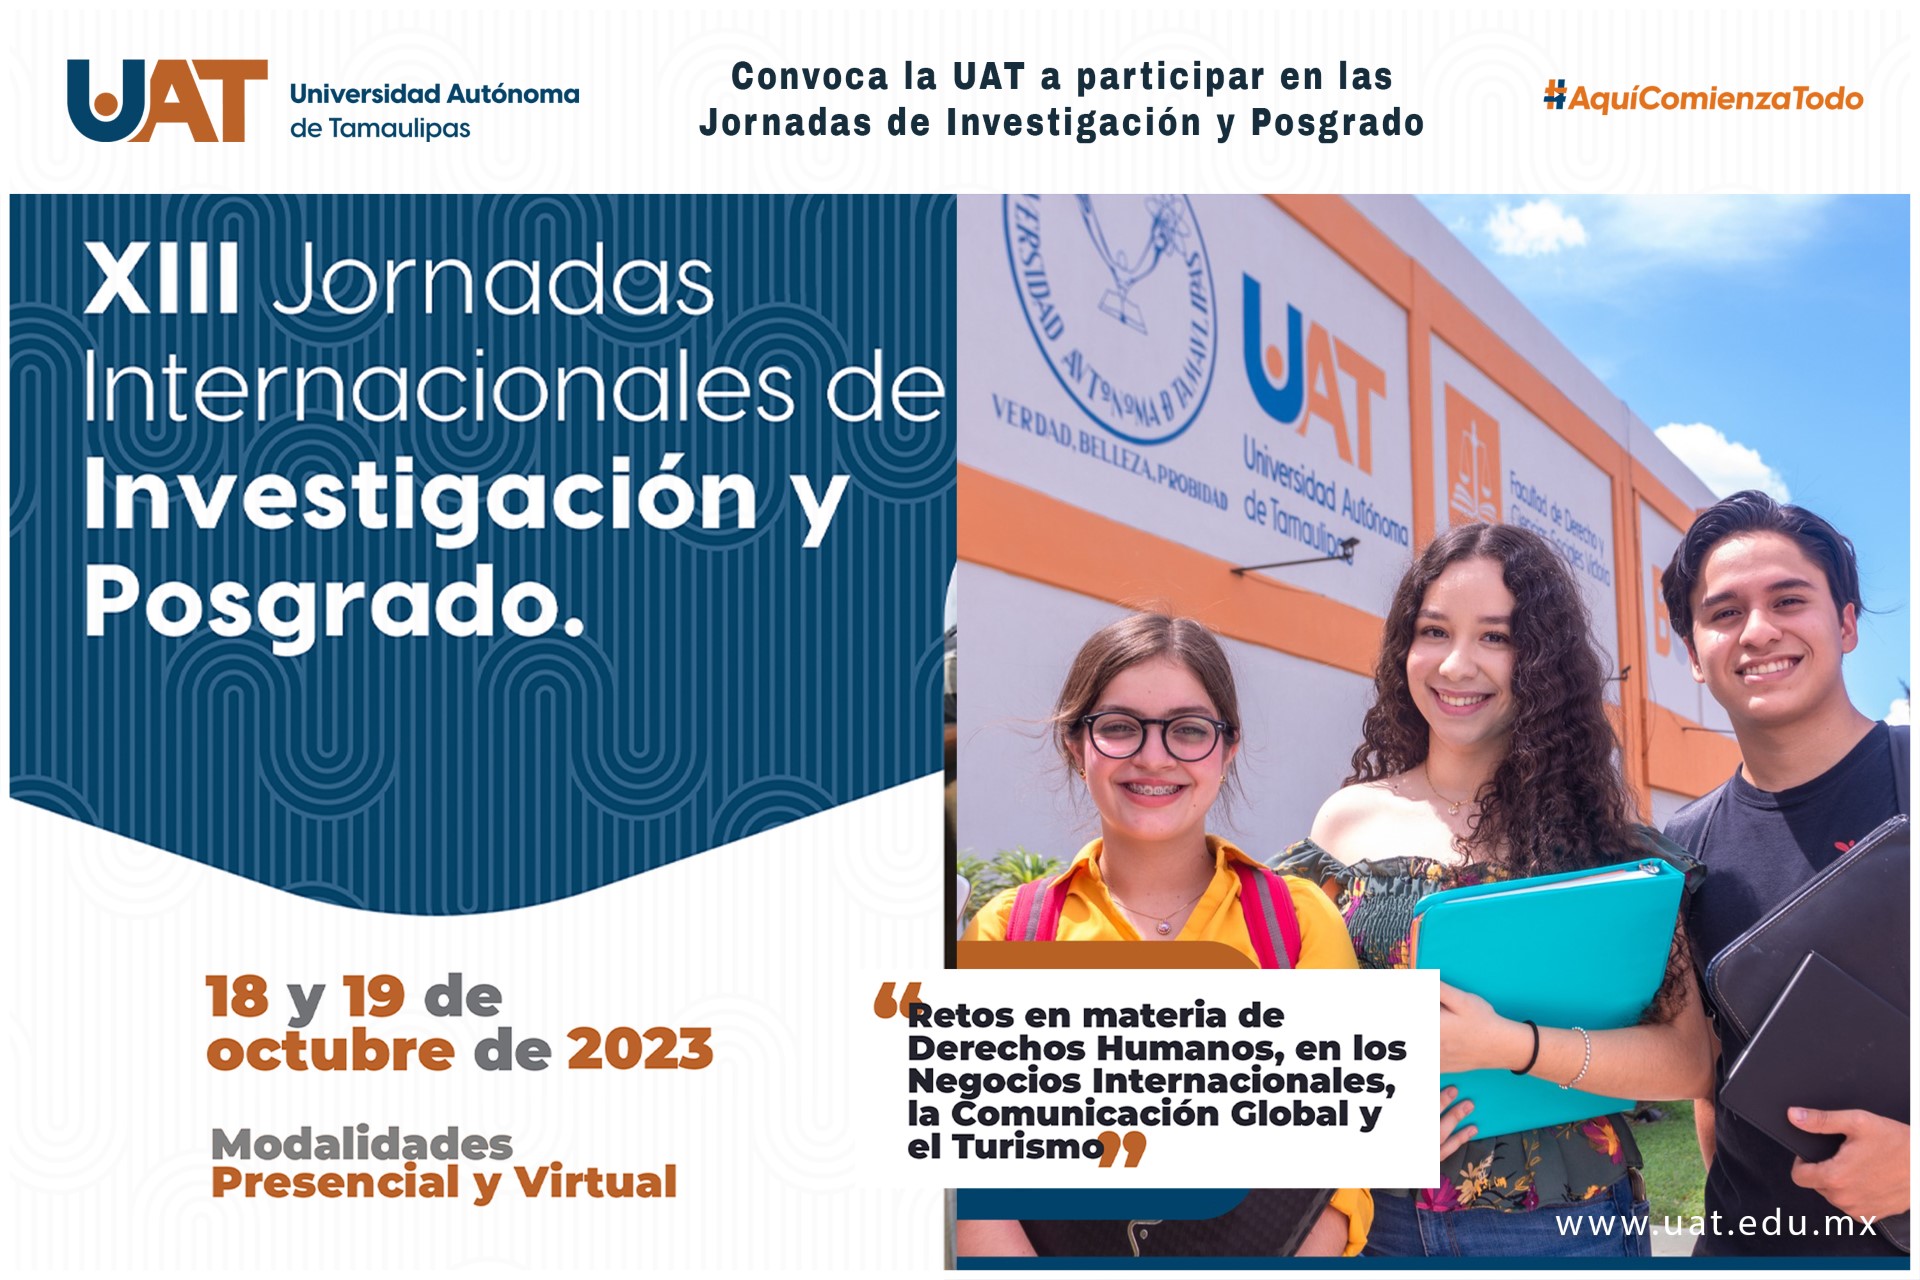 Convoca la UAT a participar en las Jornadas Internacionales de Investigación y Posgrado